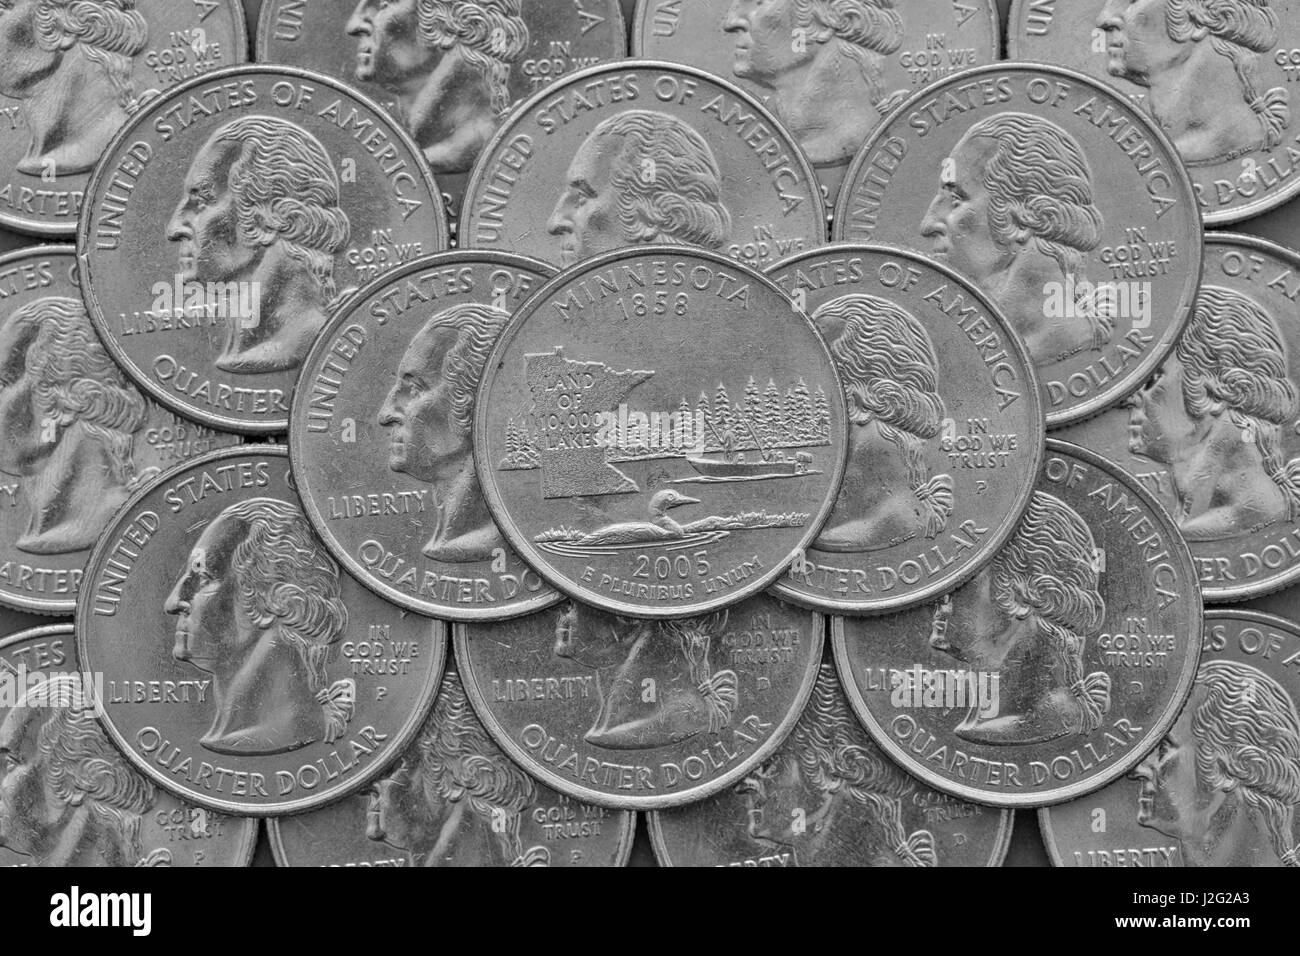 Stato del Minnesota e monete di Stati Uniti d'America. Pila di noi trimestre monete con George Washington e sulla parte superiore di un quarto del Minnesota. Foto Stock